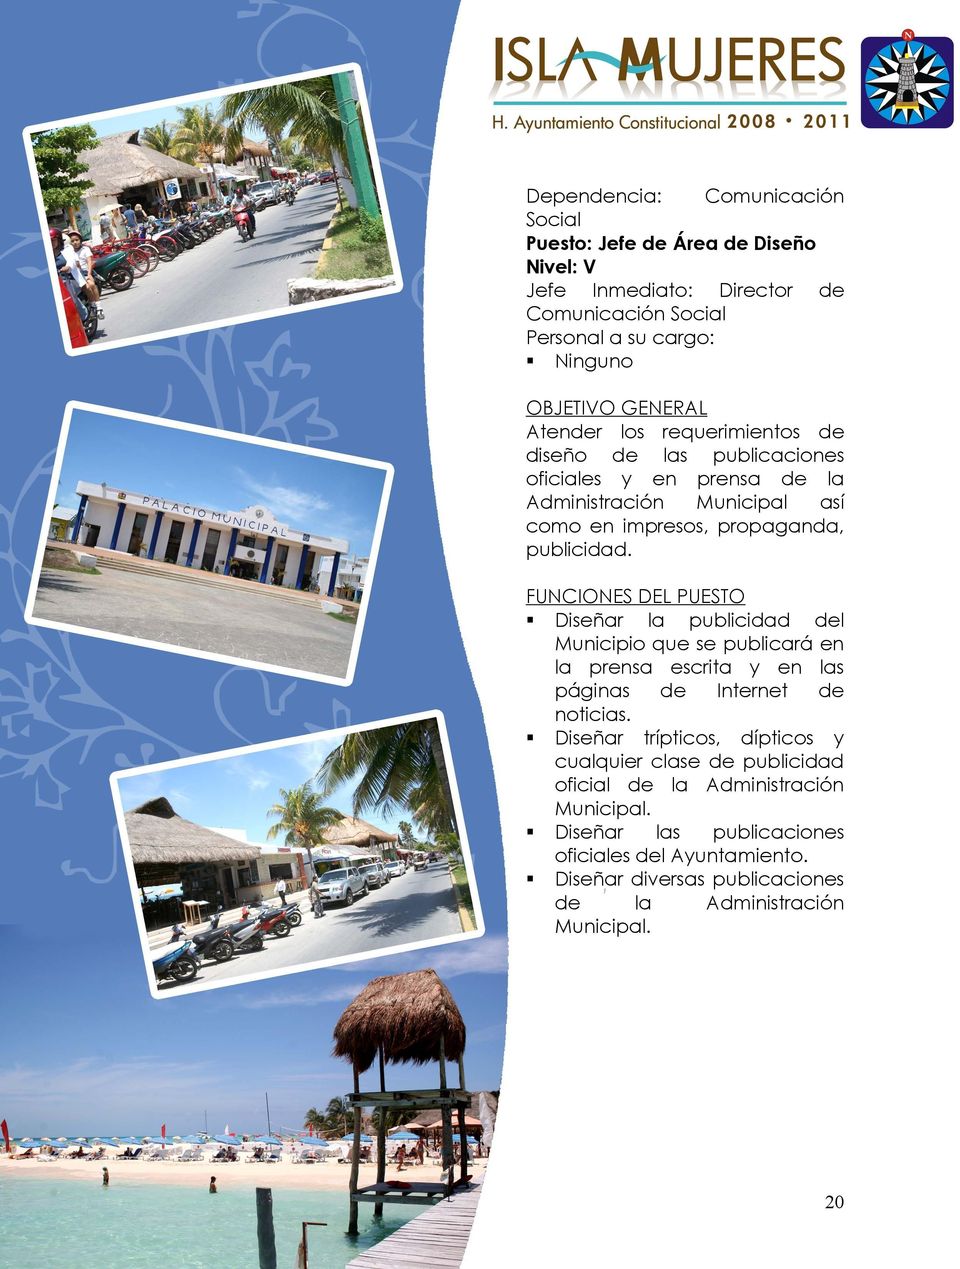 FUNCIONES DEL PUESTO Diseñar publicidad l Municipio que se publicará en prensa escrita en s páginas Internet noticias.